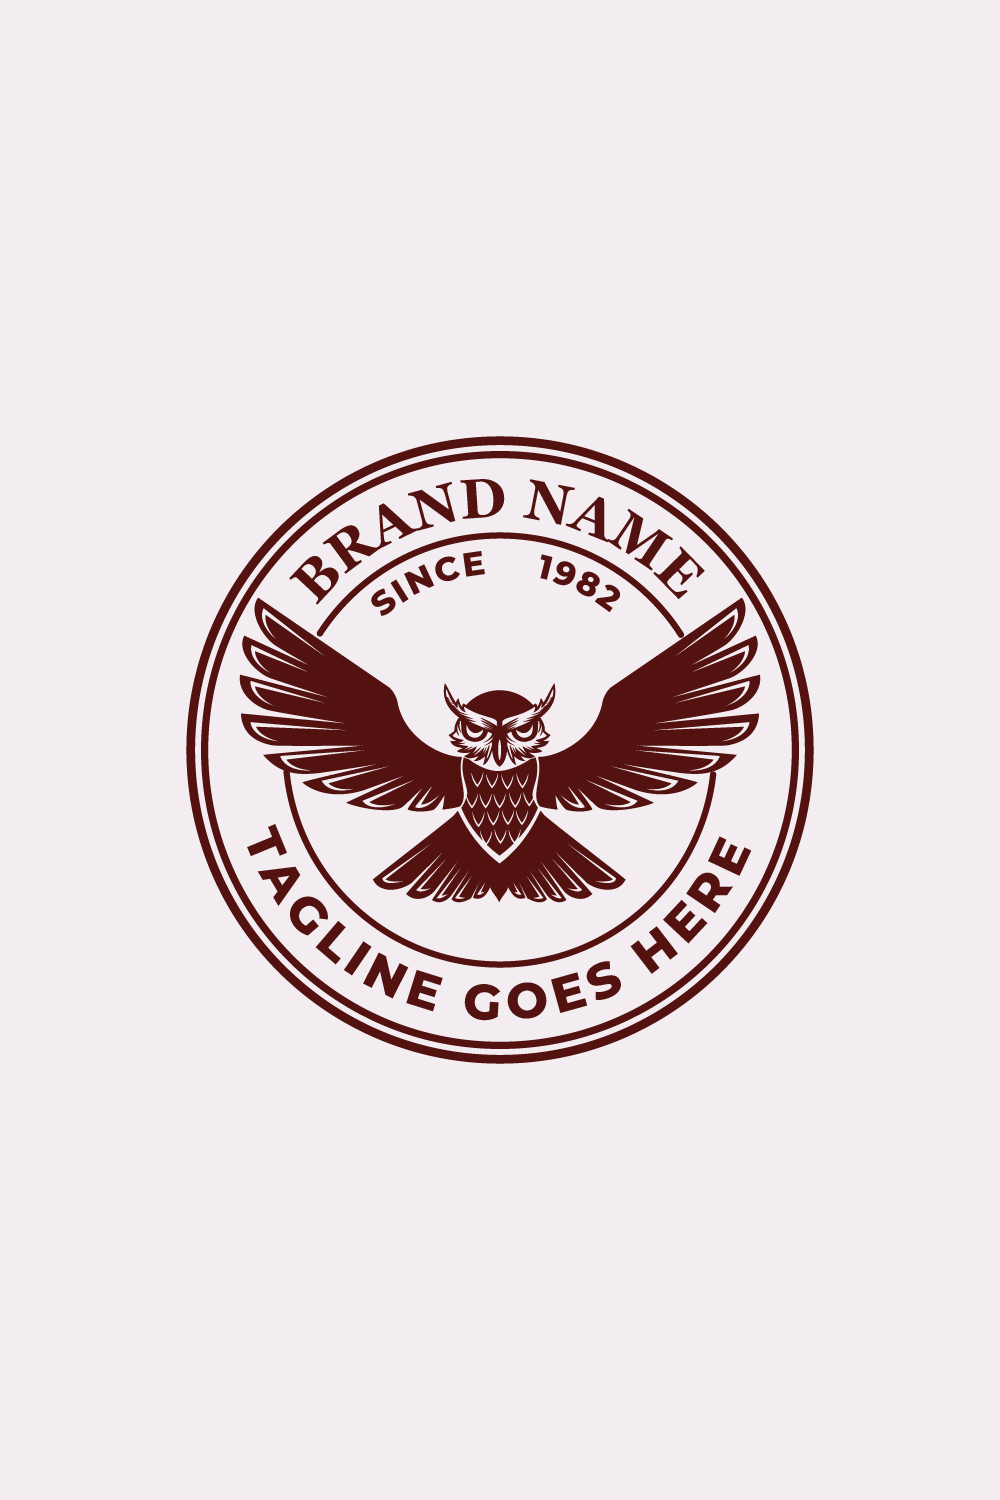 Badges Owl Logo Design pinterest preview image.